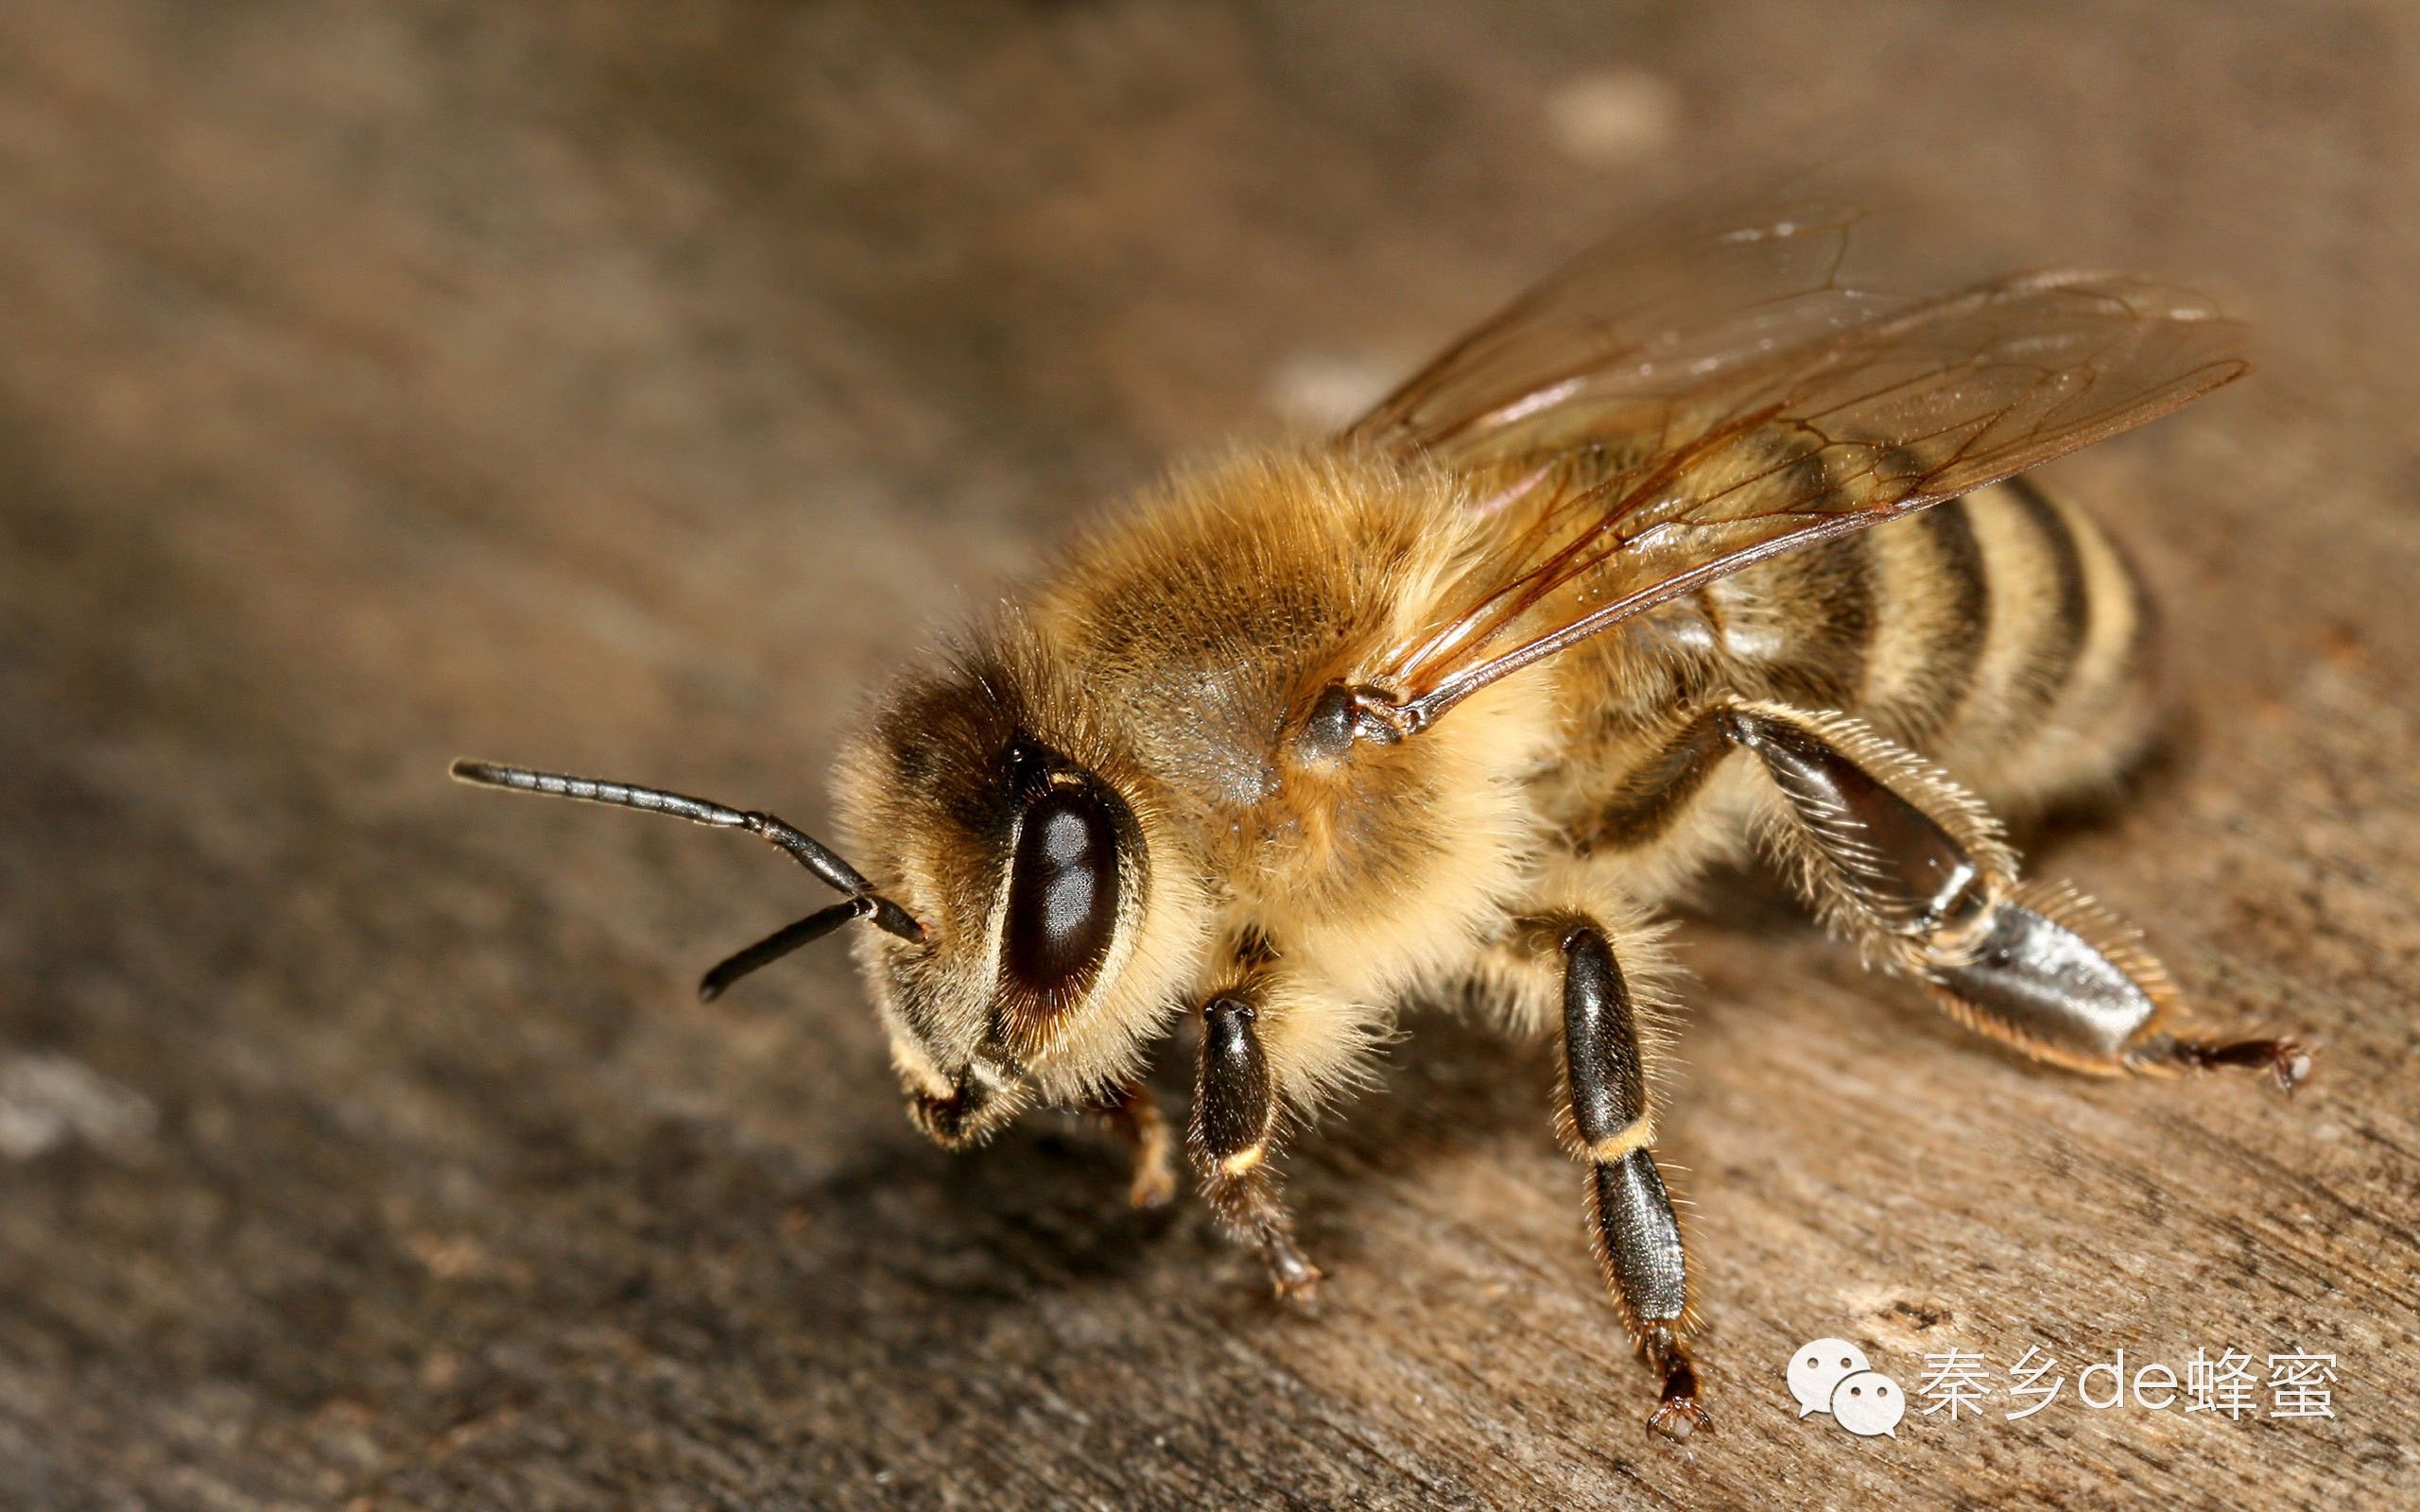 孕妇喝蜂蜜水好吗 黄瓜蜂蜜面膜的功效 三日蜂蜜减肥法 蜂蜜有什么好处 溃疡